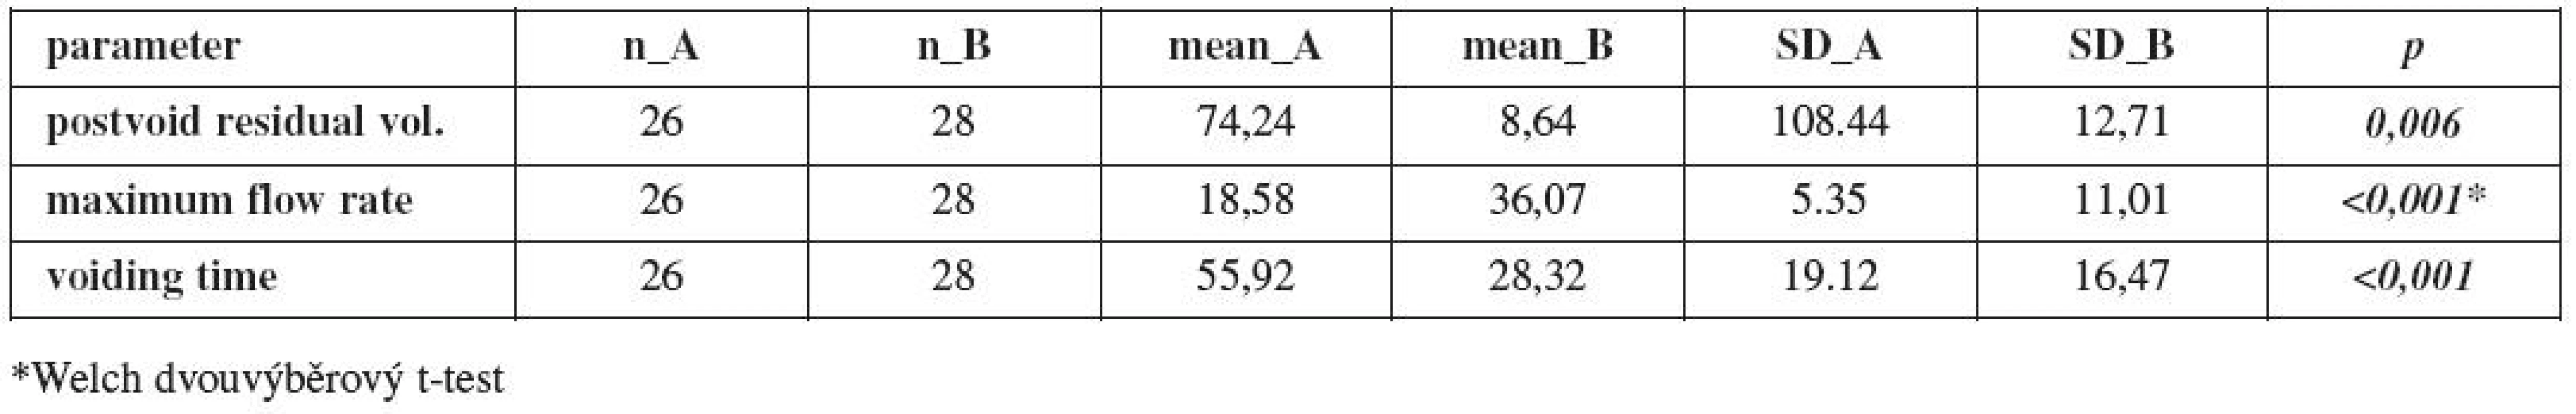 Porovnání průměrů urodynamických parametrů pacientů skupiny A a B pomocí t-testu